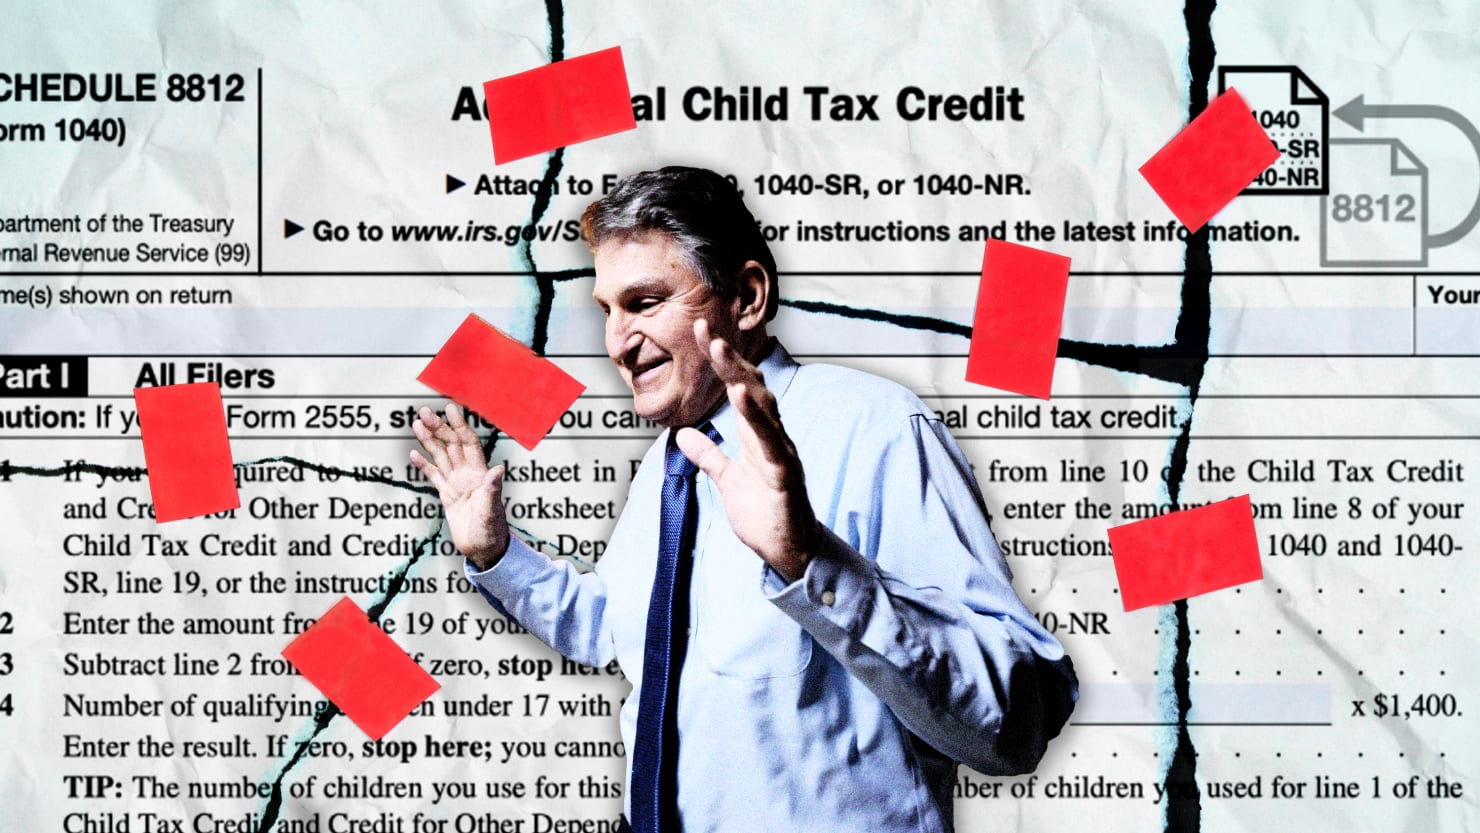 Joe Manchin condenó el crédito fiscal para niños. ¿Pueden los Estados salvar a los niños?